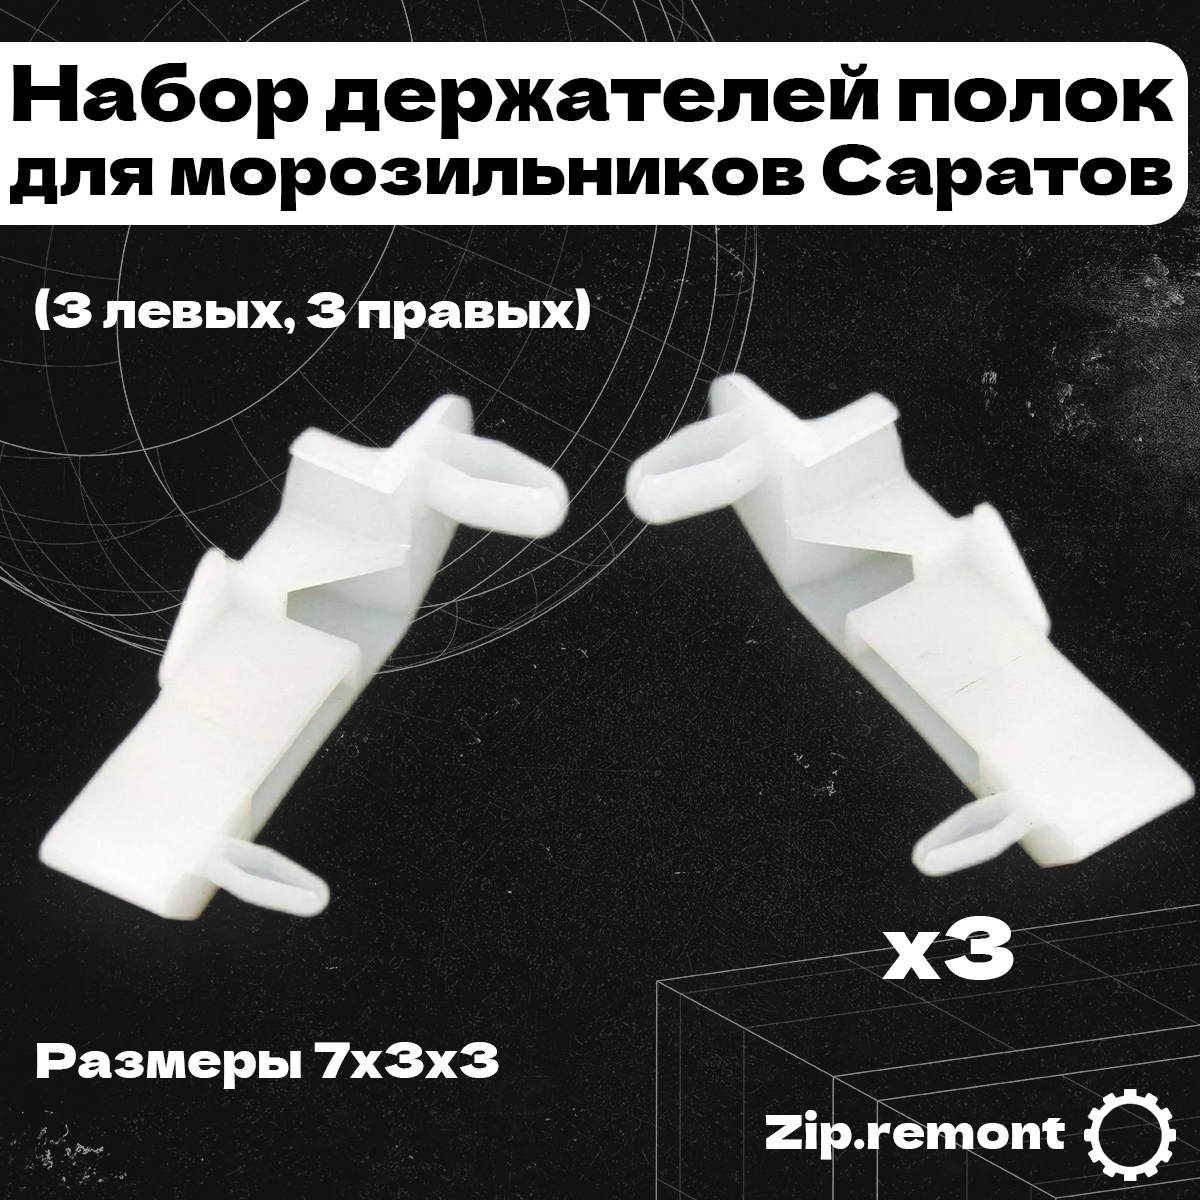 Набор держателей полок для морозильников Саратов (3 левых и 3 правых), (МП), 006565